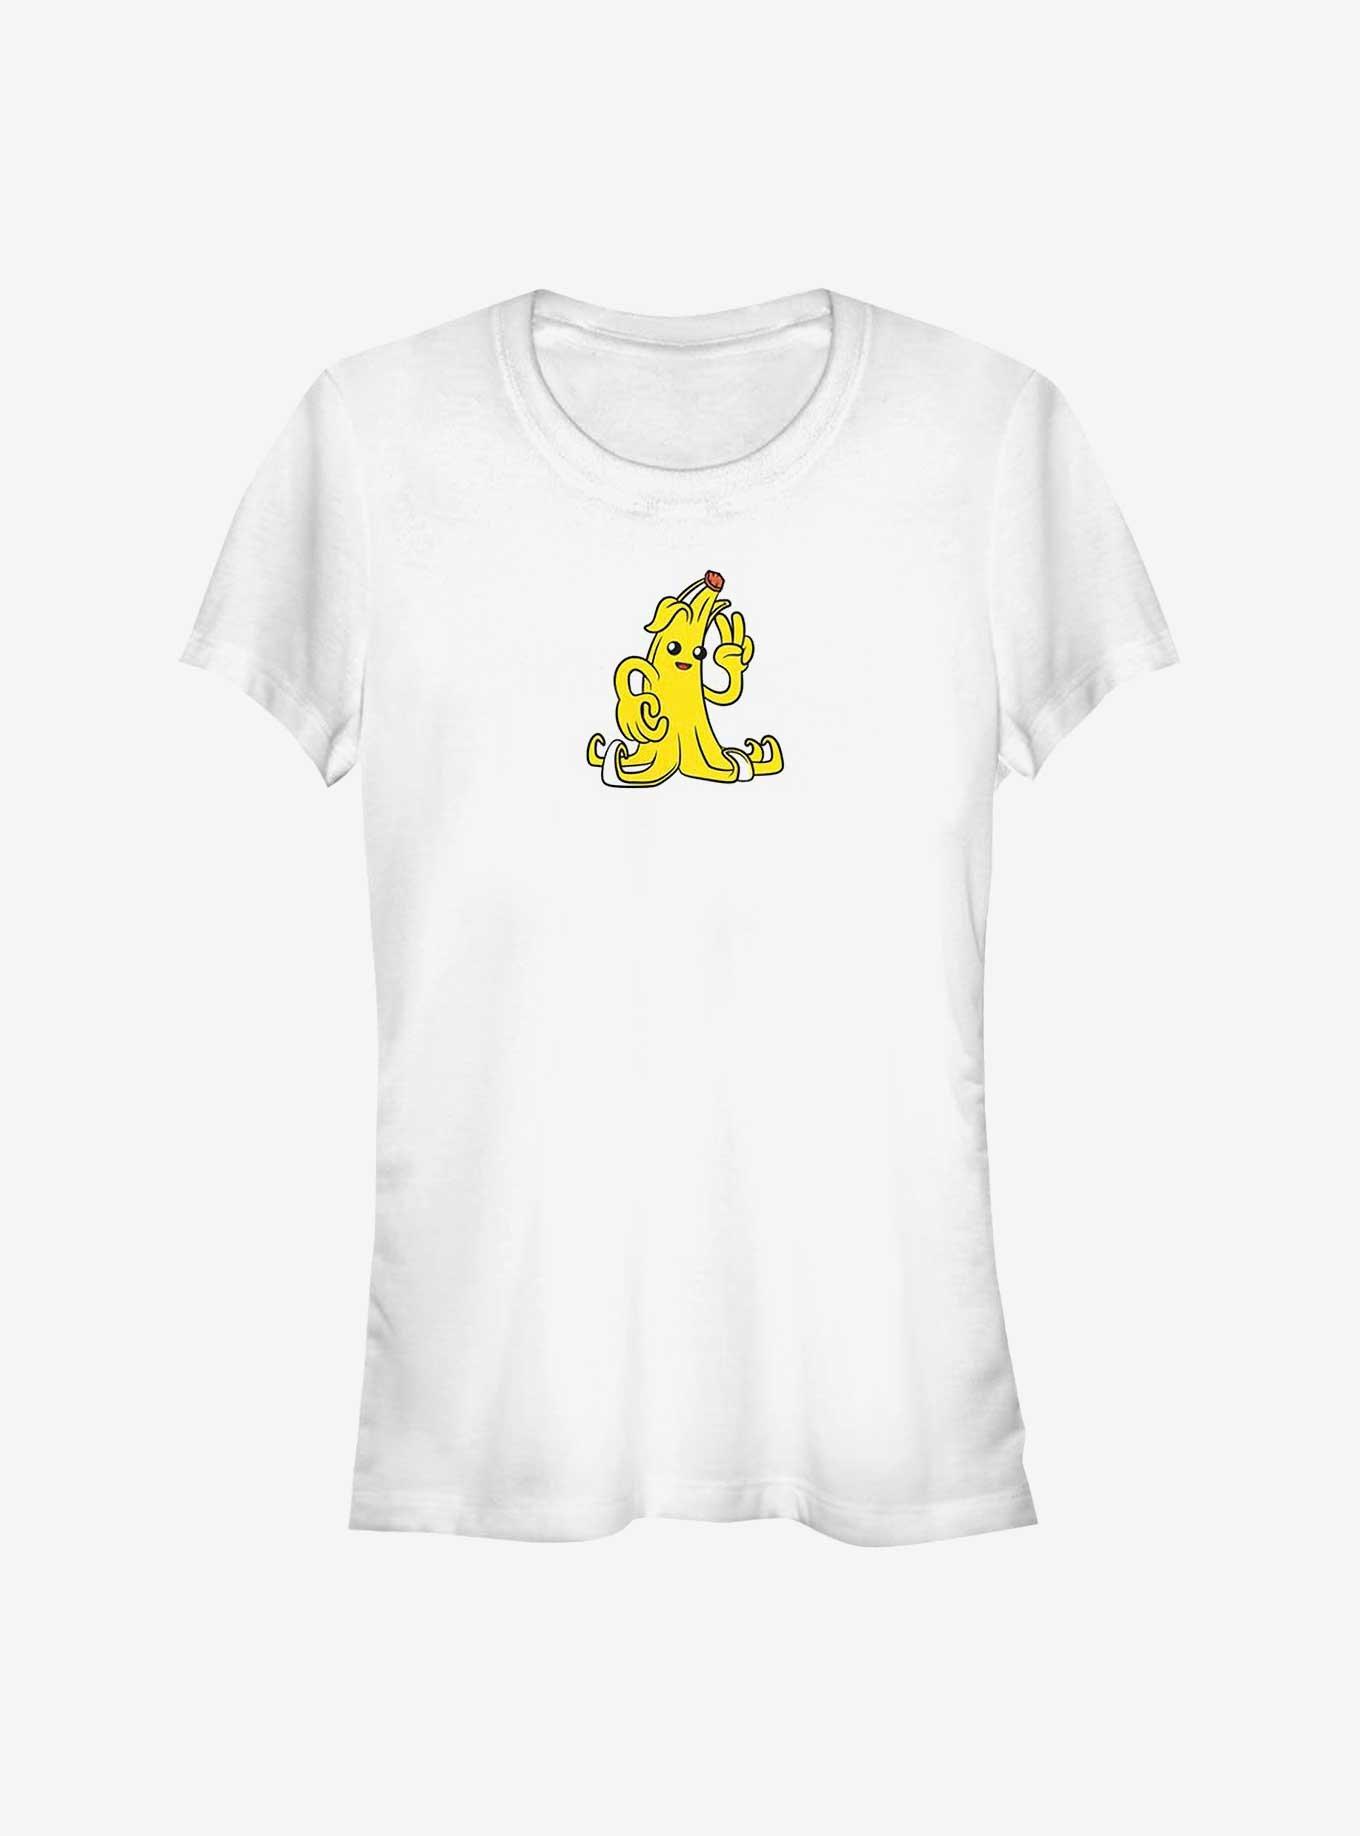 Fortnite Banana Peely Peace Girls T-Shirt, WHITE, hi-res